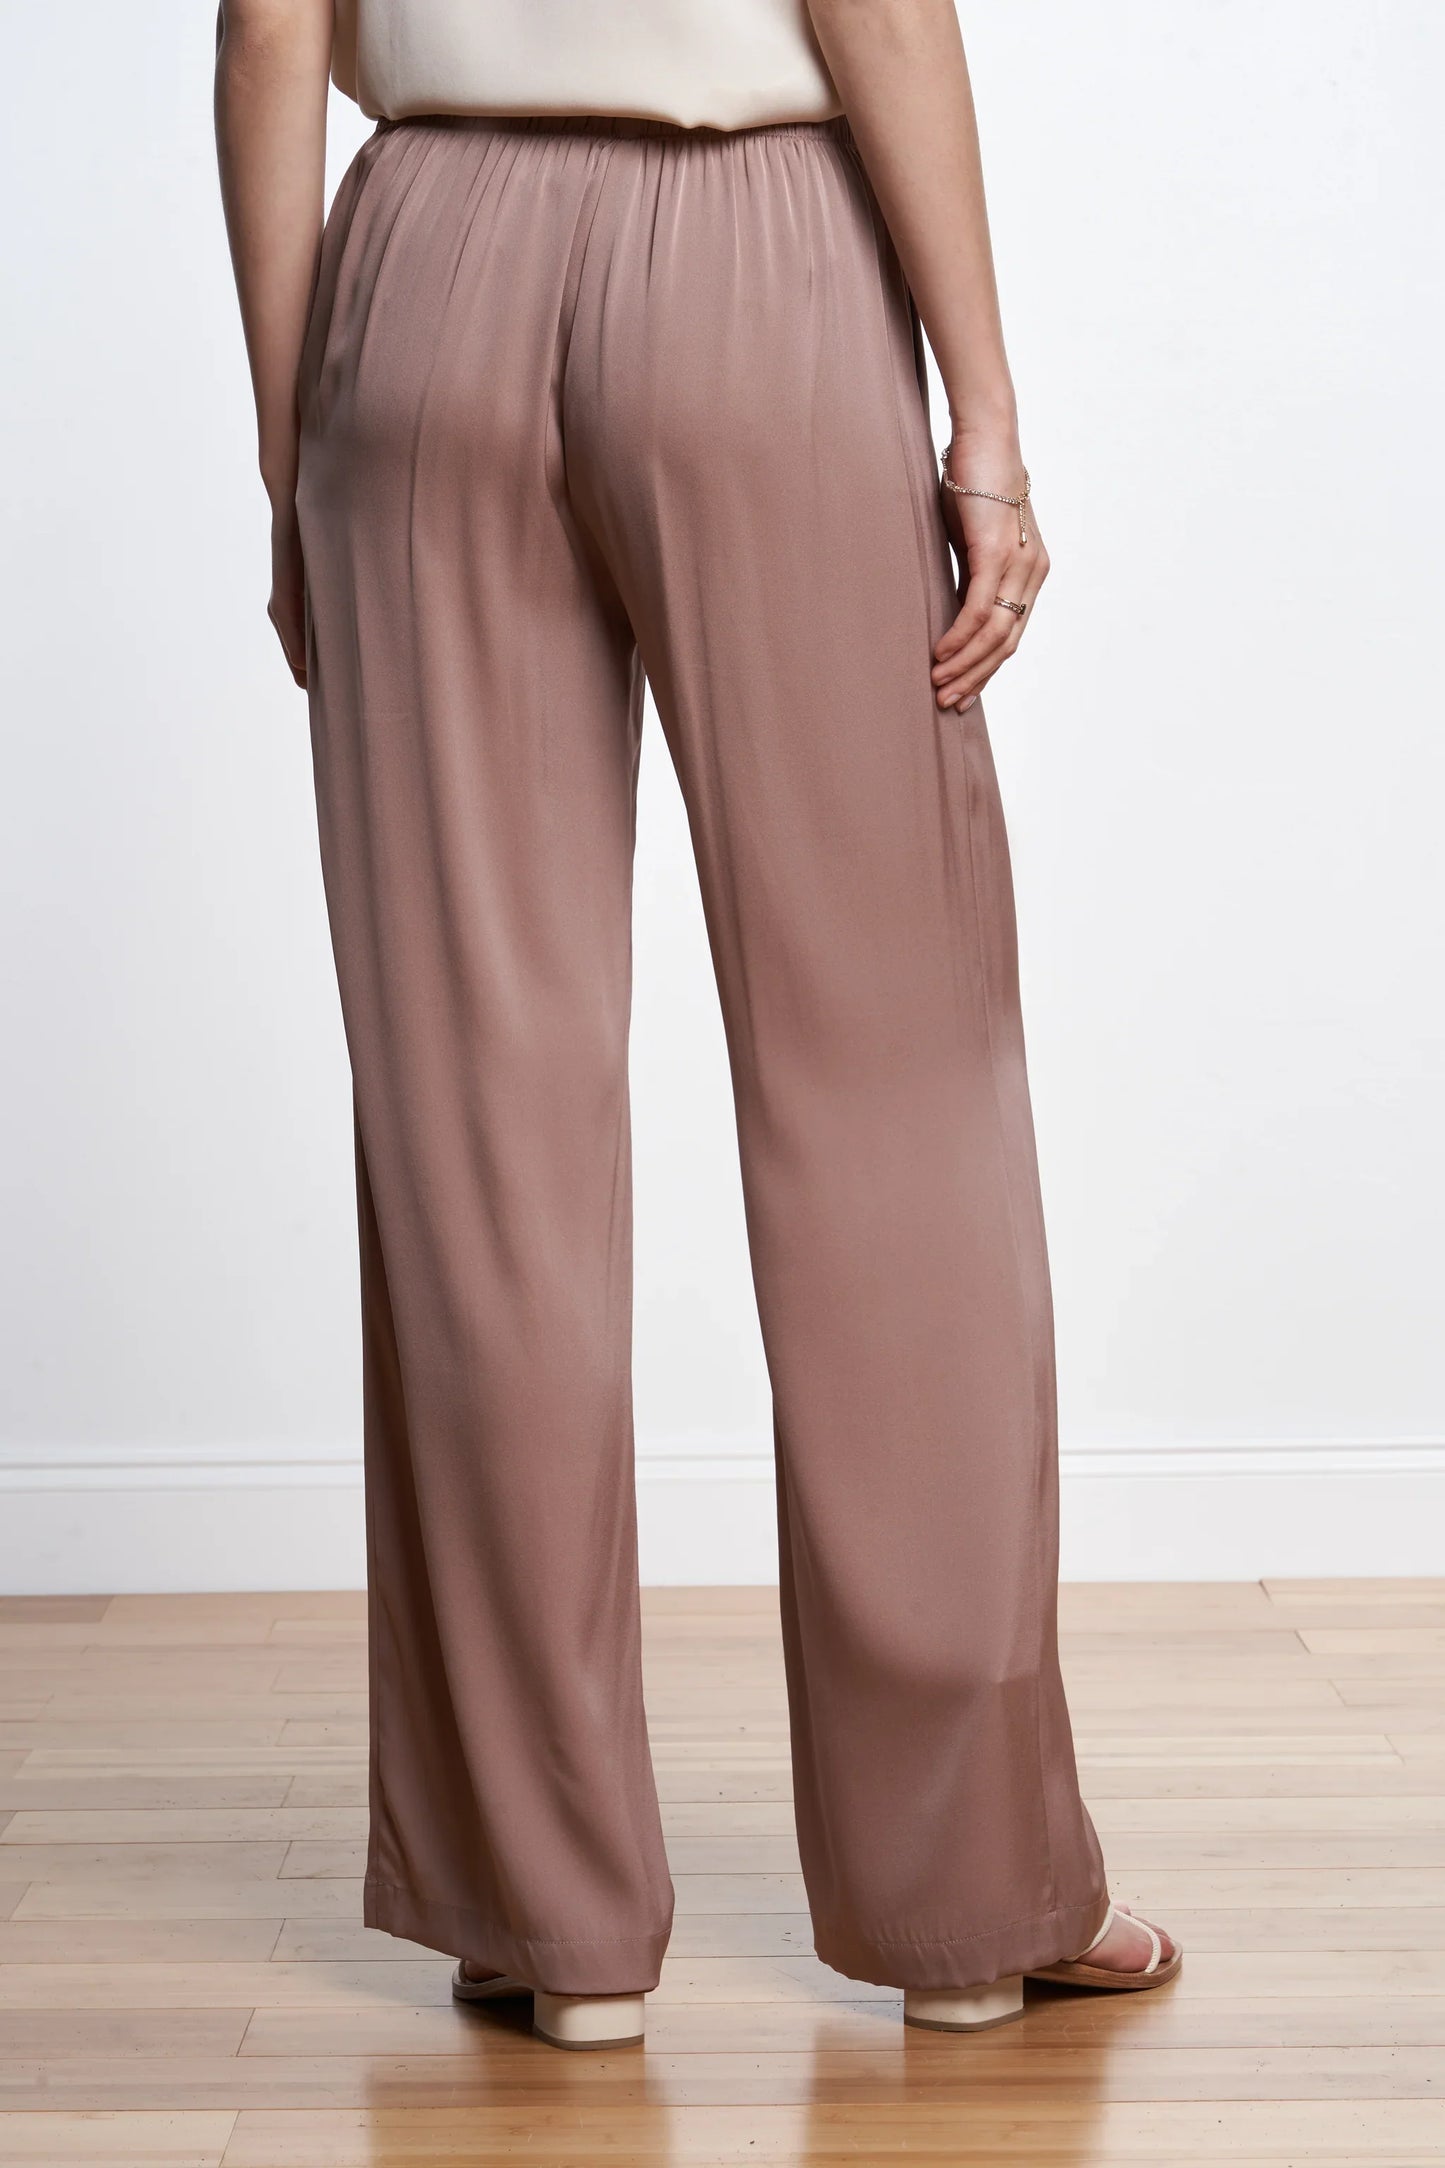 Amalfi Pant - Premium Pants from Marina St Barth - Just $395! Shop now at Marina St Barth